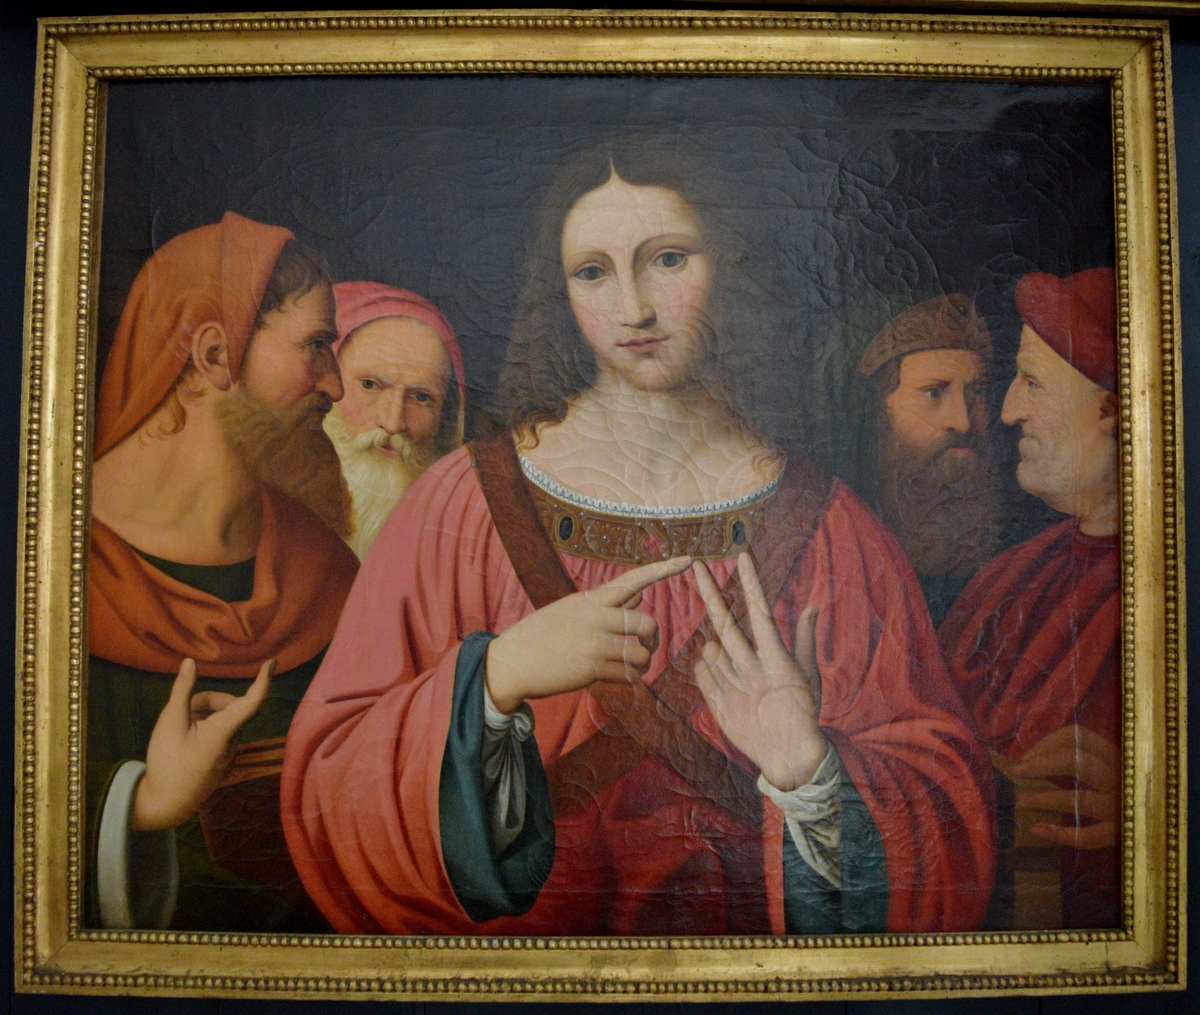 Bildet viser Jesus kledd i rød kjortel i diskusjon med de skriftlærde. Gesten han gjør kan være telling av argumenter på fingrene,  det er kjent at dette var en hukommelsesteknikk også i antikken. Jesus er omgitt av to lærde på hver side. Bakgrunnen er mørk. På venstre side går ikke motivet helt ut til kanten, men ender i en bråbrun kant. 

Maleriet er en kopi av av et bild eav Leonardo da Vinci, men det er lite trolig at det er en direkte kopi. National gallery i London har en Leonardo-kopi utført avLuini, og denne har temmelig nøyaktig de samme målene osm det aktuelle maleriet på Gimle. Det er trolig at bildet derfor kan være en kopi av det malt av Luini. i forhold til Leonardos original er maleriet en temmelig god gjengivelse også i detaljer. Imidlertid virker Jesus' ansikt en smule mer feminint på kopien. 
Det originale Leonardo-bildet ble bestilt av Isabel D'Erste 14. mai 1540, og var ferdig omkring 1507.